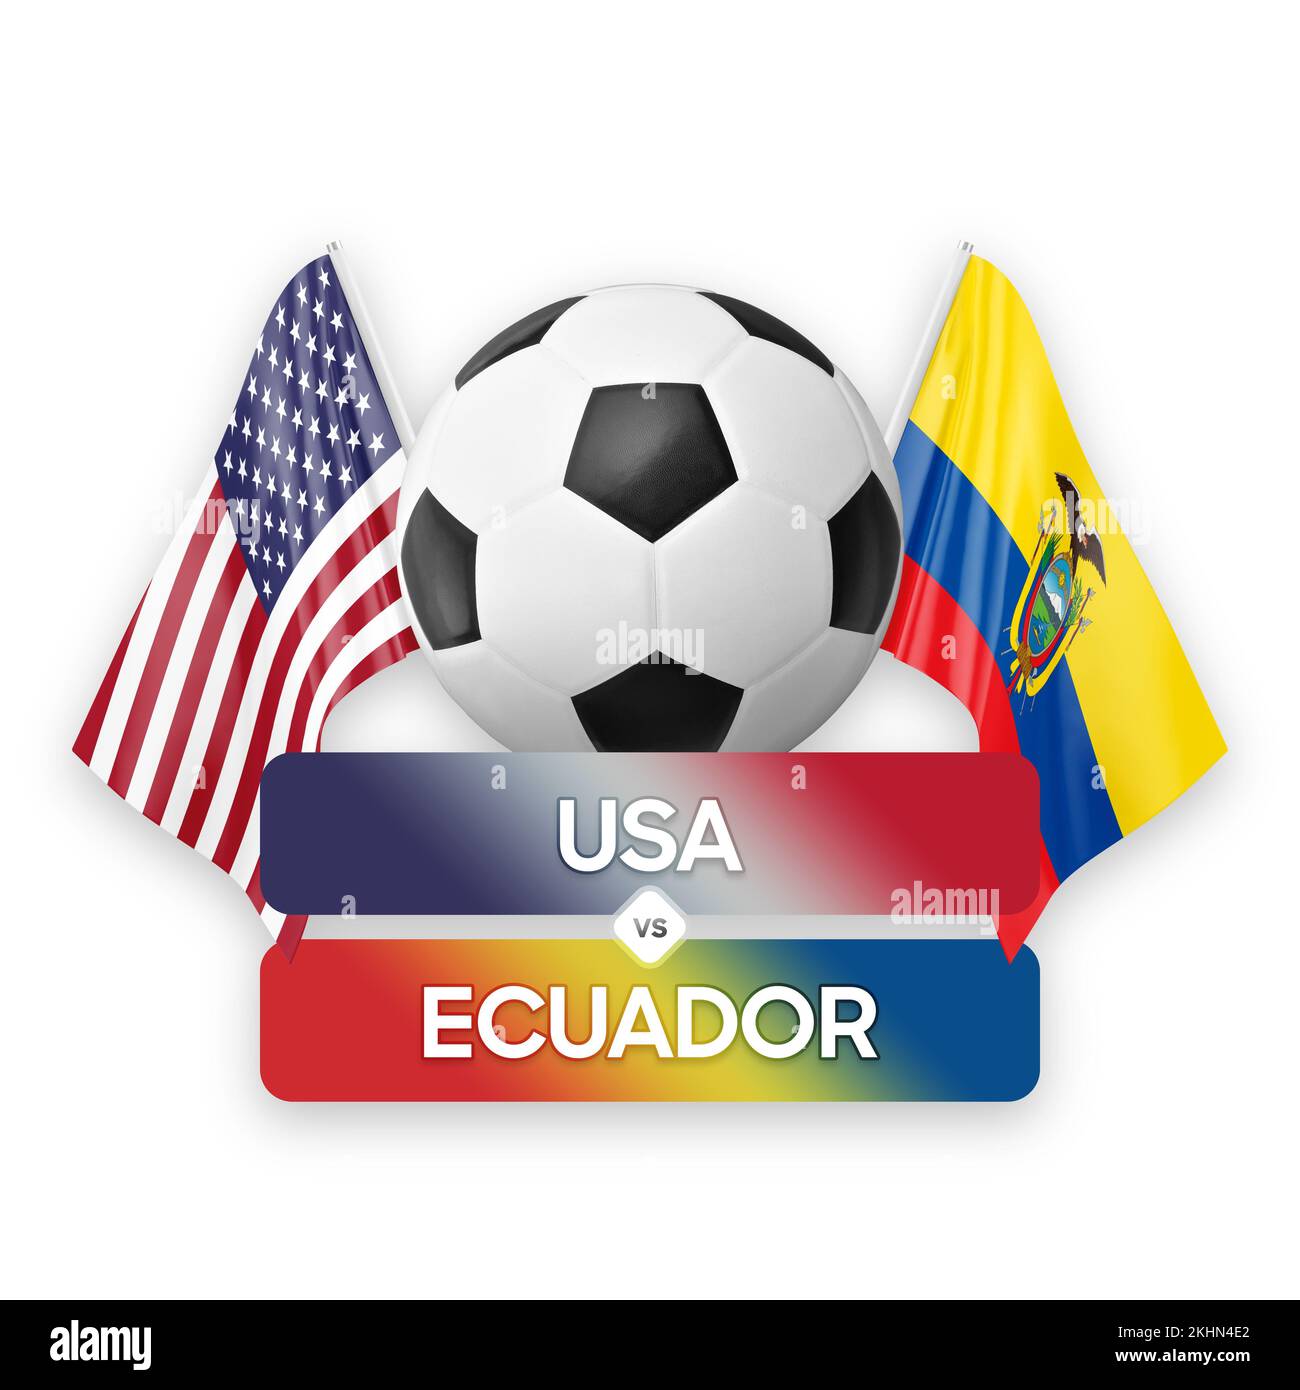 USA vs Ecuador national teams soccer football match competition concept. Stock Photo